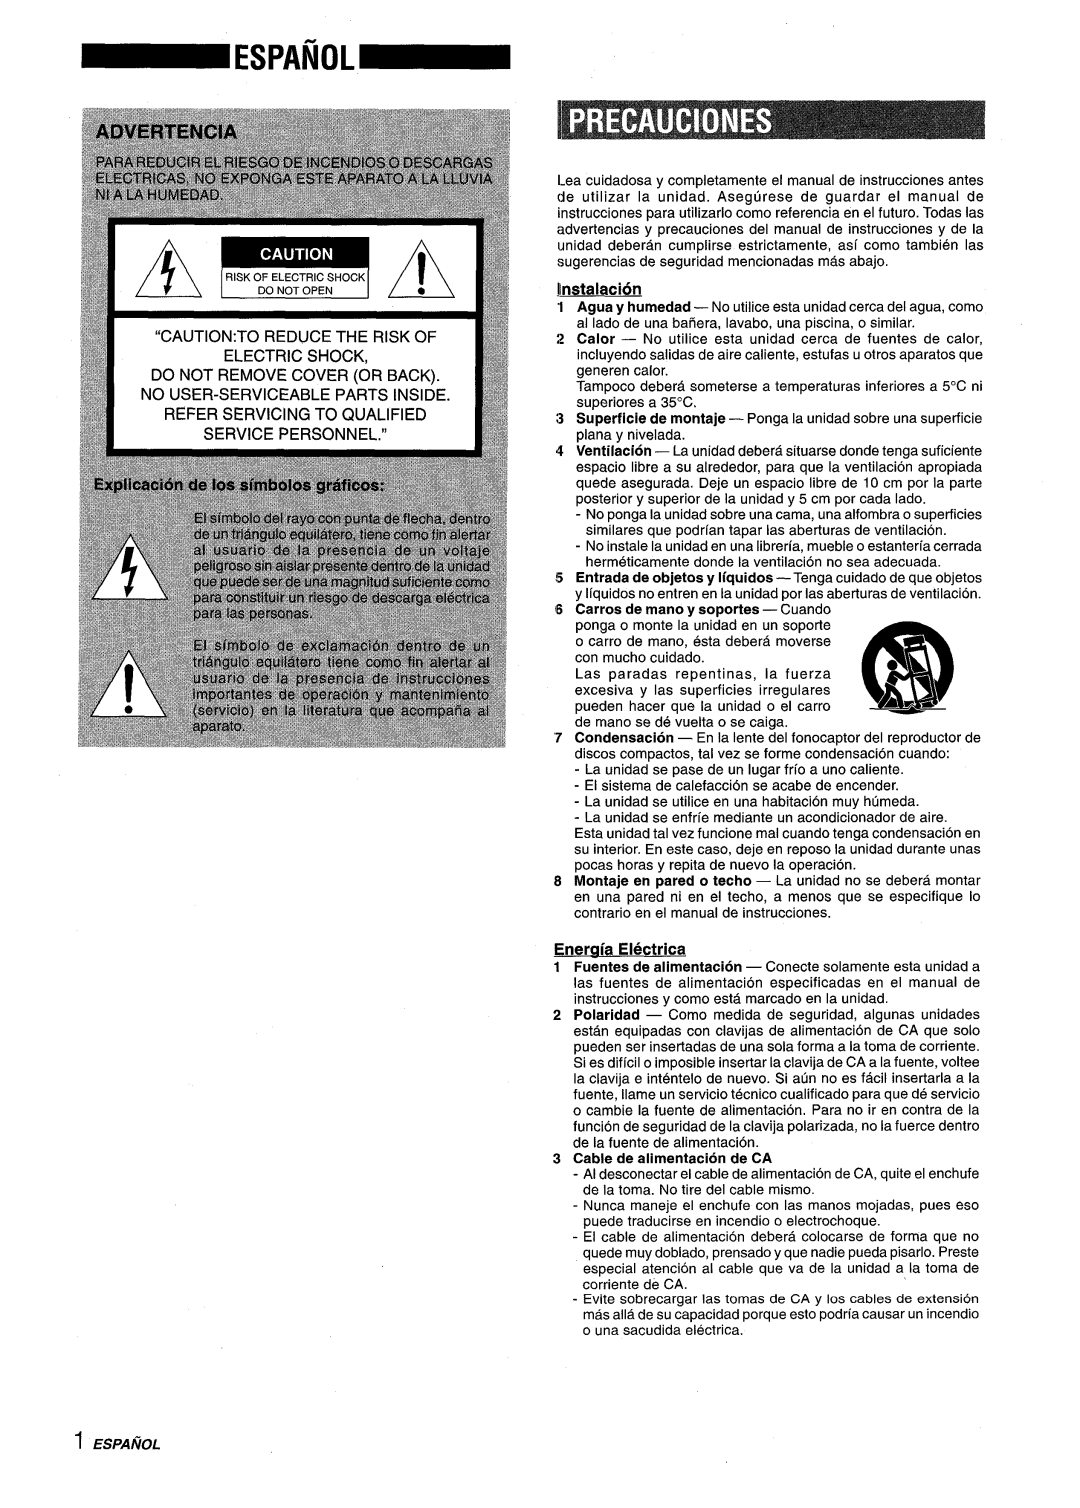 Aiwa XM-M25 manual IInstalacion, Entrada de objetos y Iiquidos -Tenga cuidado de que objetos, Enercfia Electrica, 1~ k 